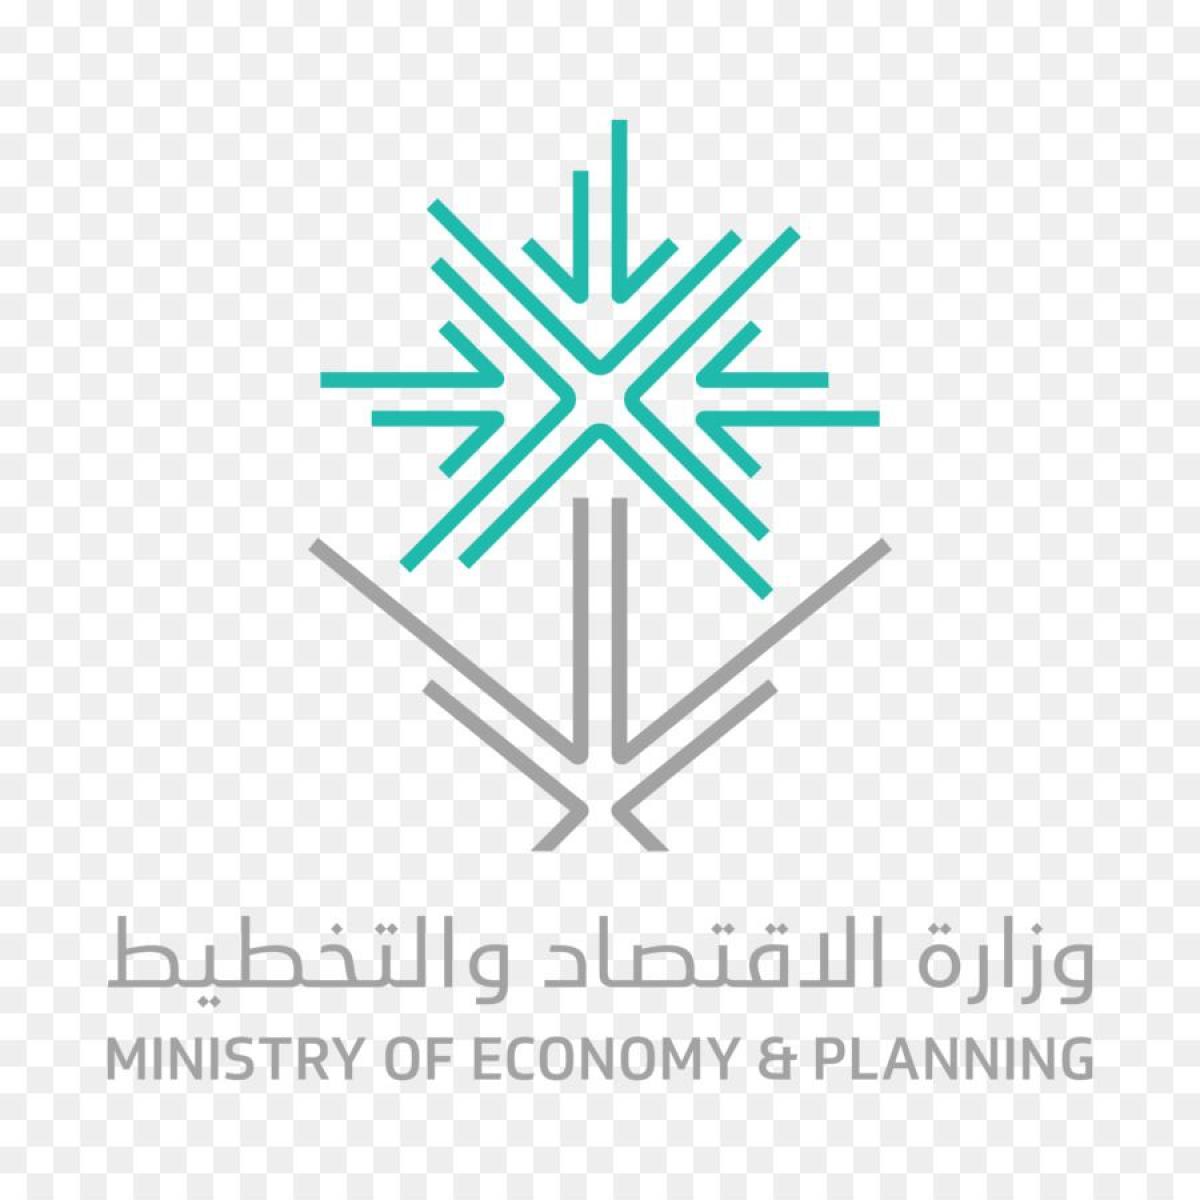 تهدف لتطوير البنية التحتية.. وزارة الاقتصاد توضح فوائد الاستراتيجية الوطنية للاستثمار
محليات